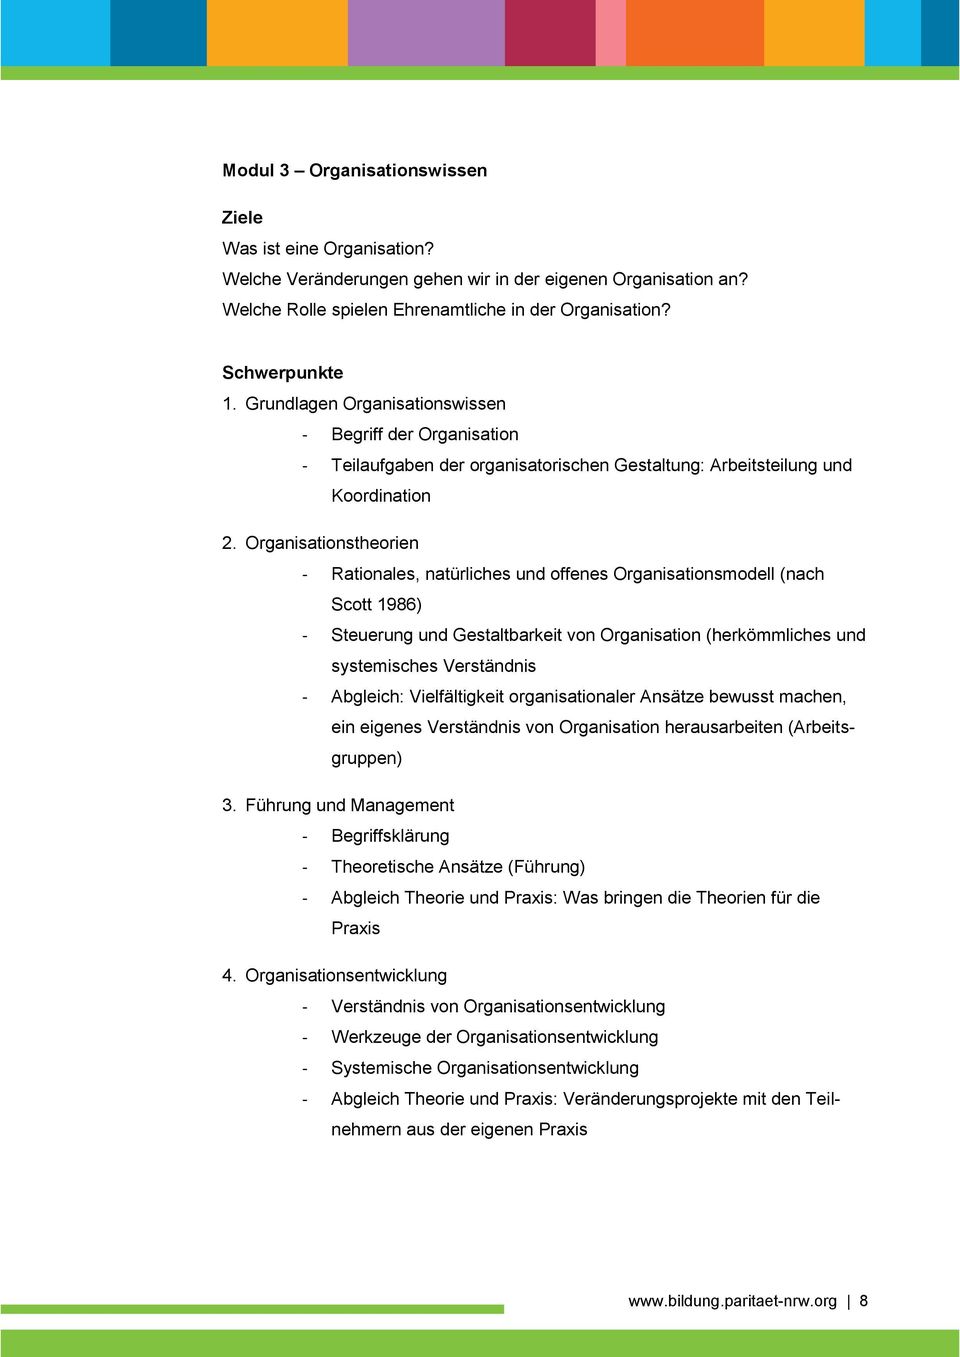 Organisationstheorien - Rationales, natürliches und offenes Organisationsmodell (nach Scott 1986) - Steuerung und Gestaltbarkeit von Organisation (herkömmliches und systemisches Verständnis -